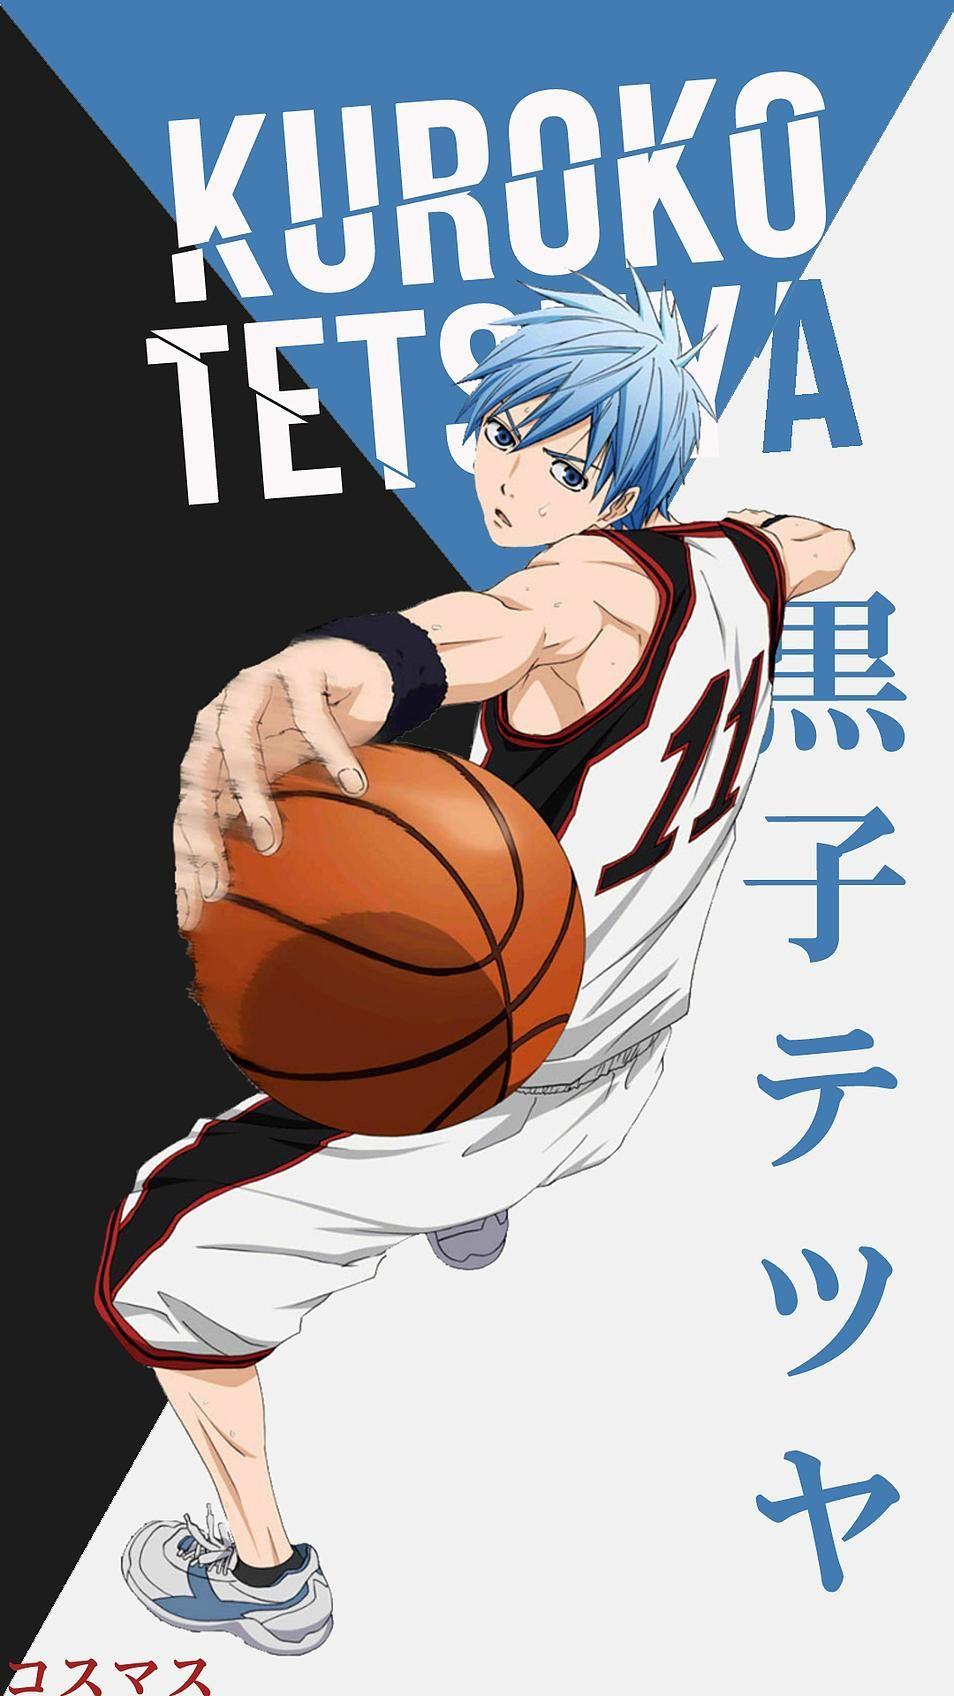 Tetsuya Kuroko Korigengi. Wallpaper Anime. Kuroko no basket